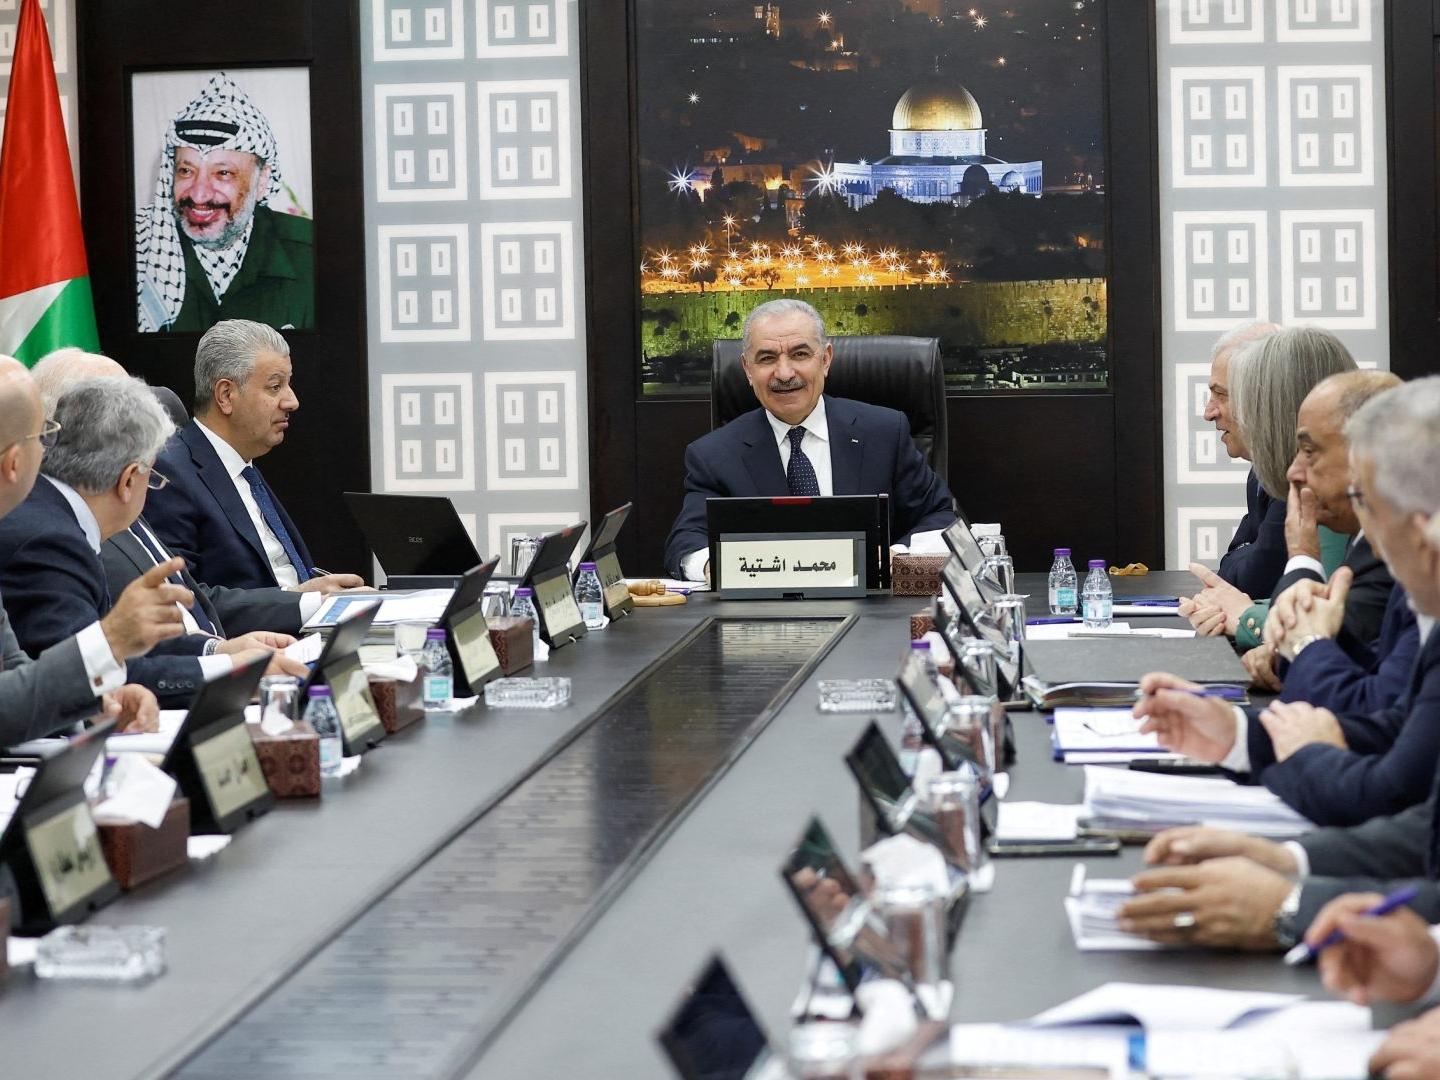 Palestina: Presenta Gobierno de Cisjordania Dimisión al Presidente Mahmud Abbas